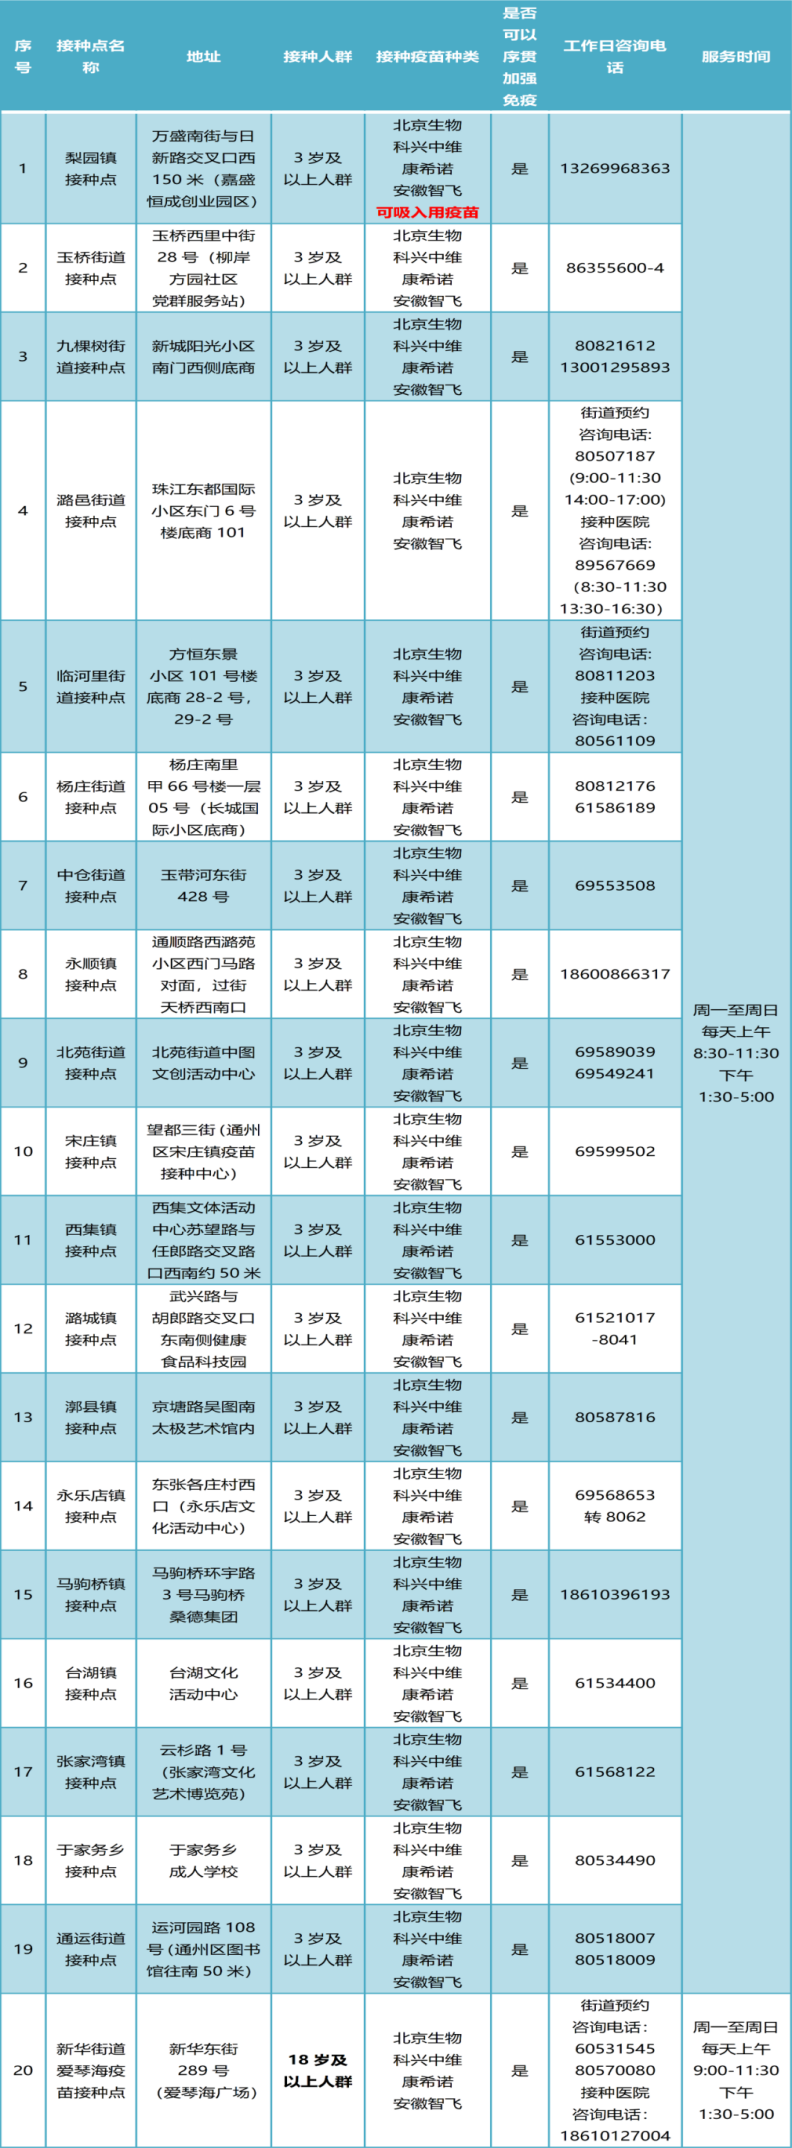 北京通州区新引入两款新冠病毒疫苗进行加强免疫接种工作26个字母竖棍体众荟法税